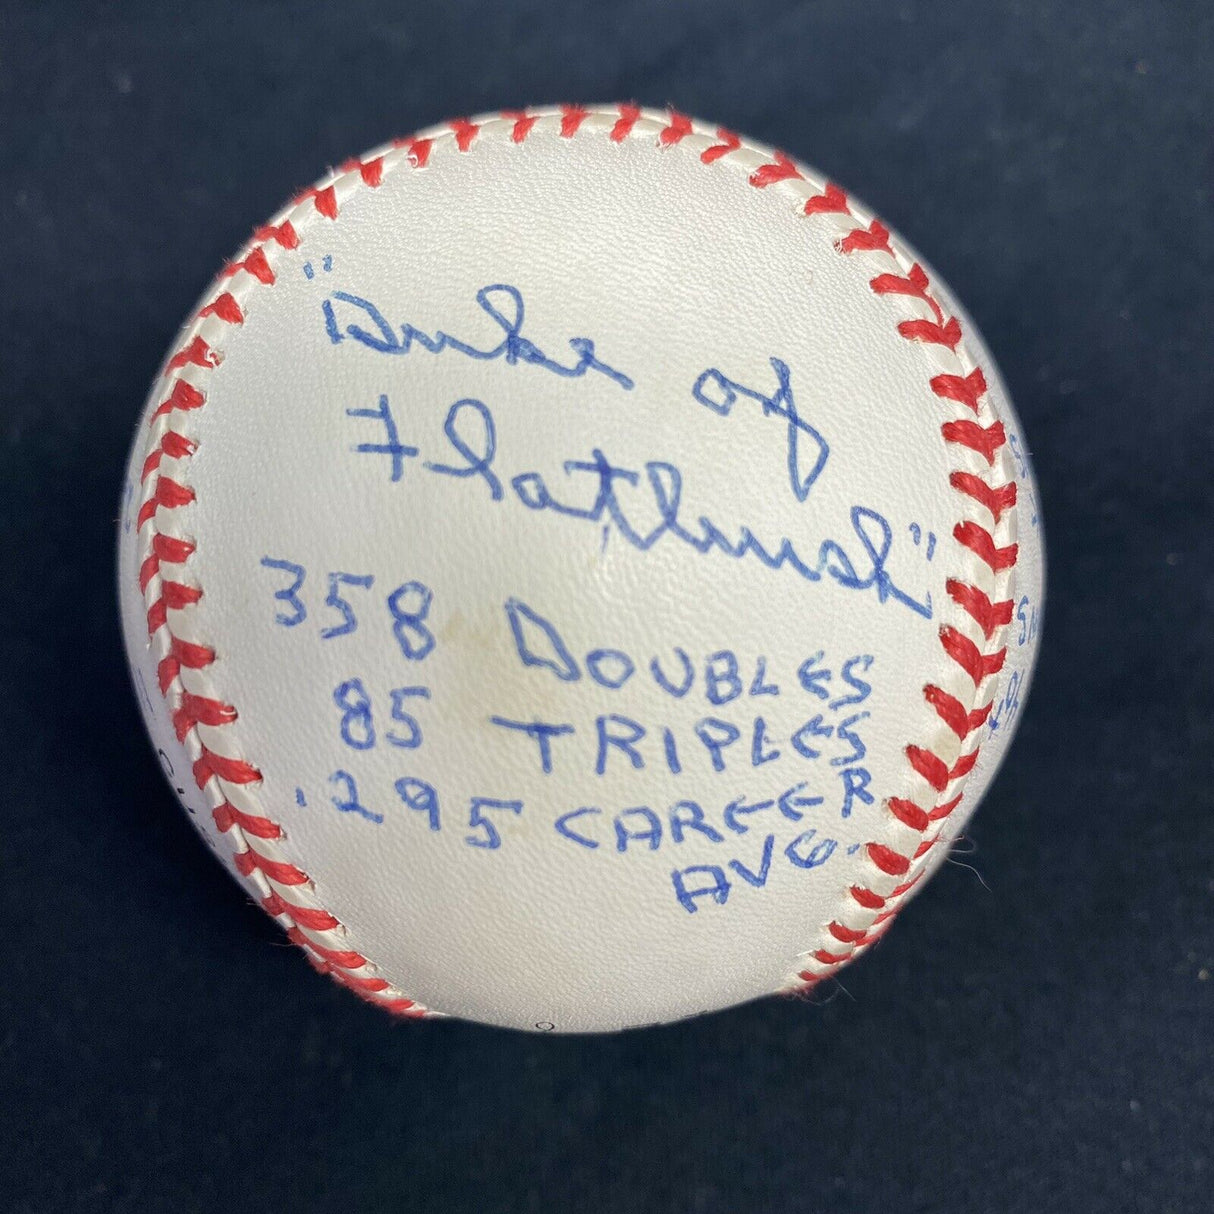 Duke Snider HOF 1980 Signed Reggie Jackson Stat Baseball